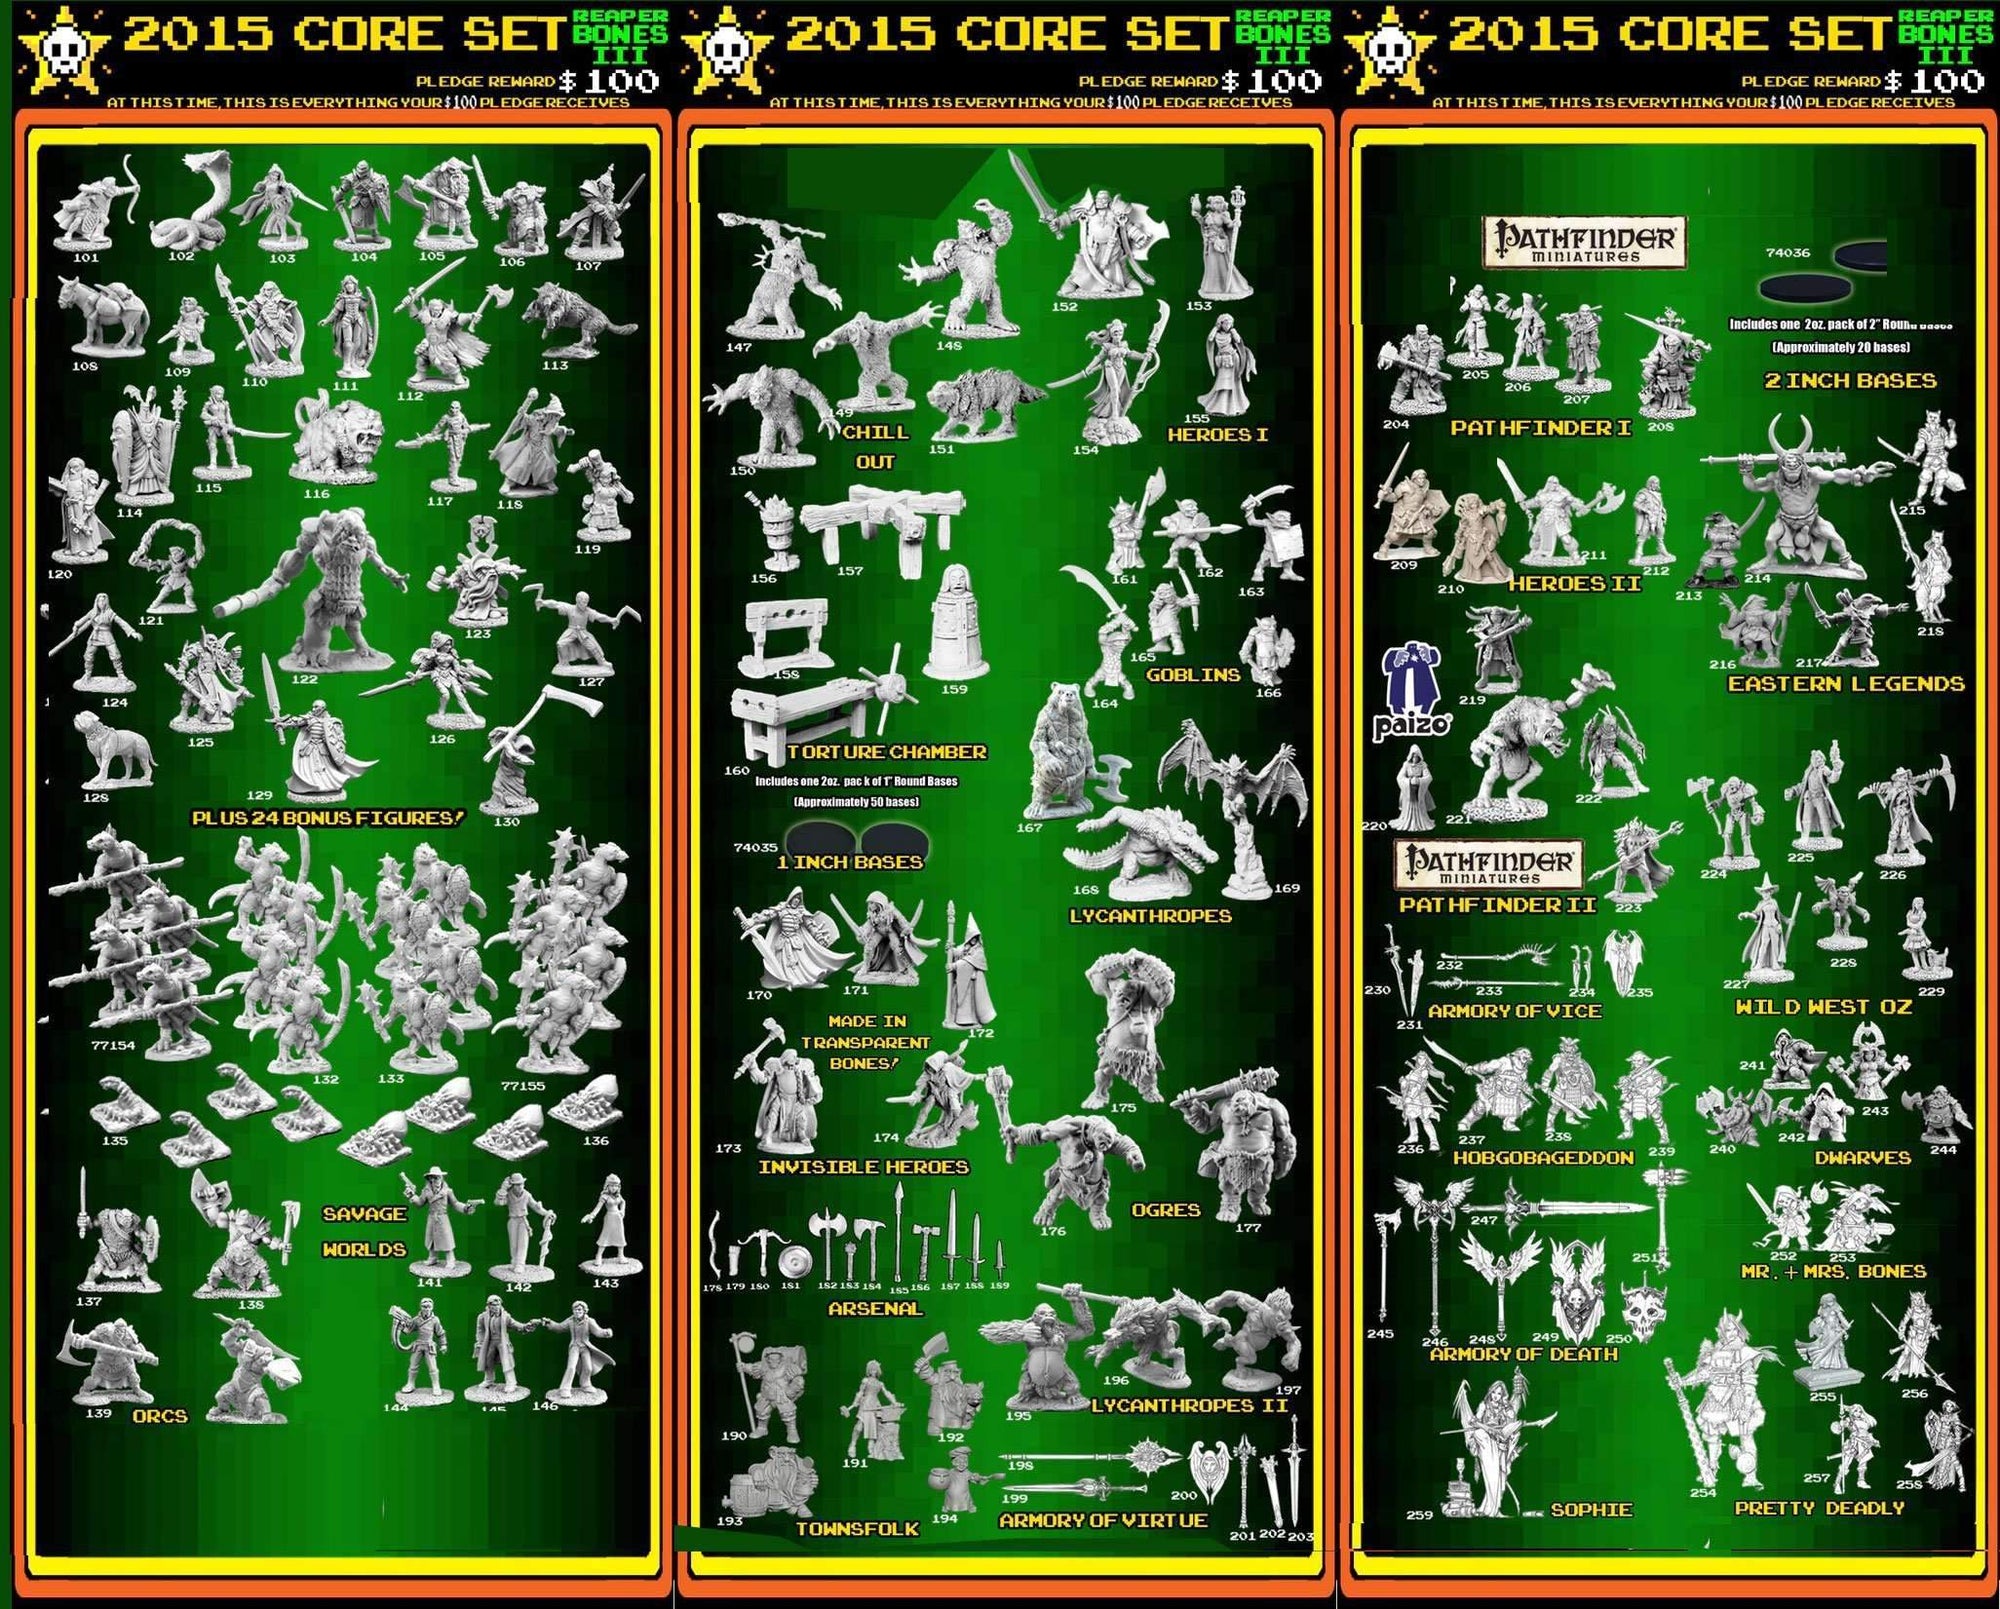 Ceifador em miniaturas ossos 3: A busca pelo Sr. Bones! (Kickstarter Special) Kickstarter Board Game Acessory the Game Steward